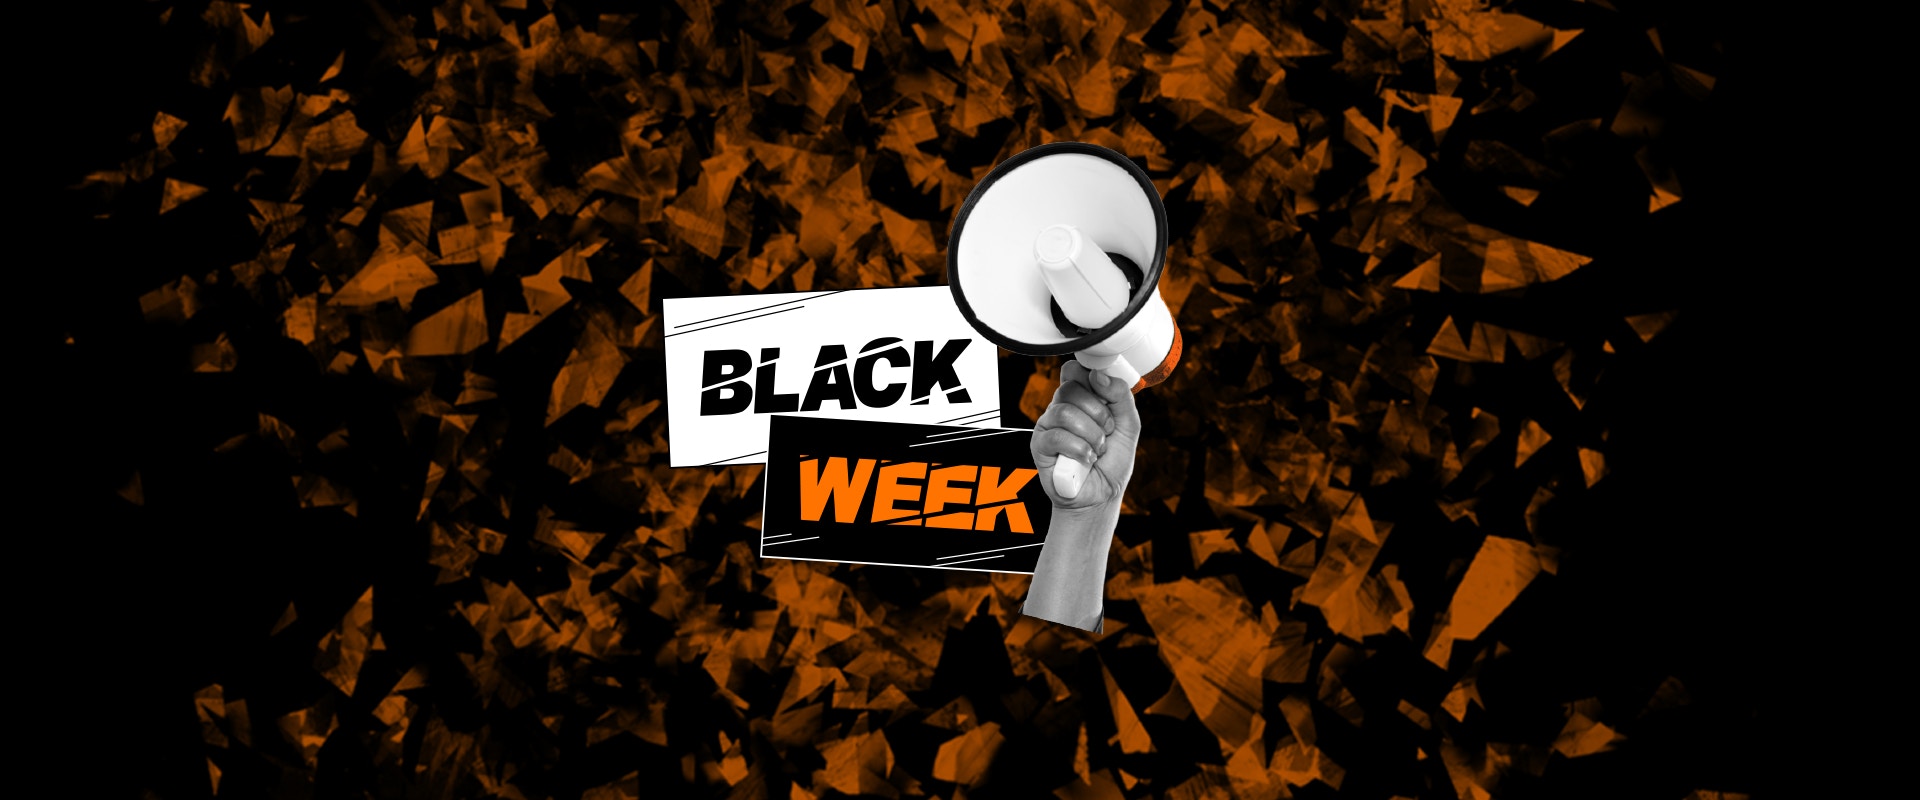 Der Schriftzug "Black Week" und ein Megafon